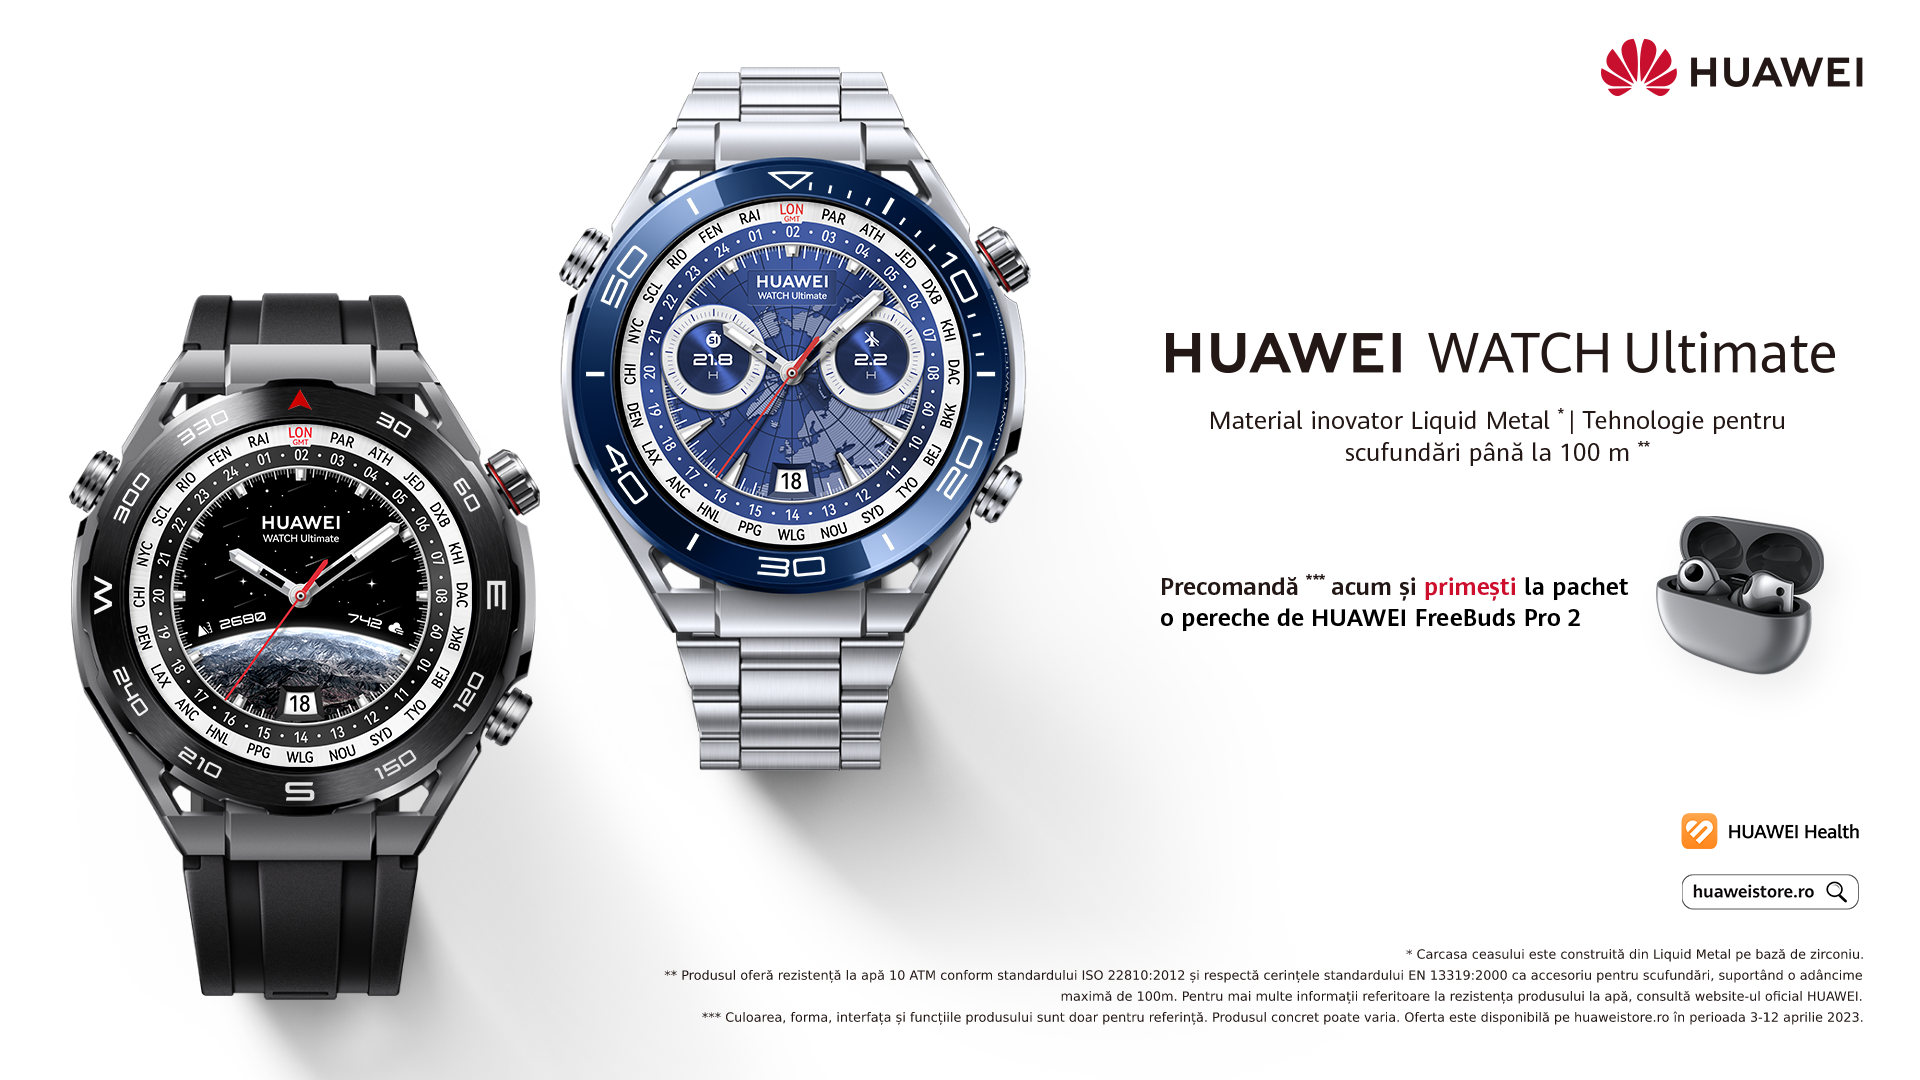 HUAWEI WATCH Ultimate: smartwatch-ul ultra-flagship cu design de lux și performanțe extreme